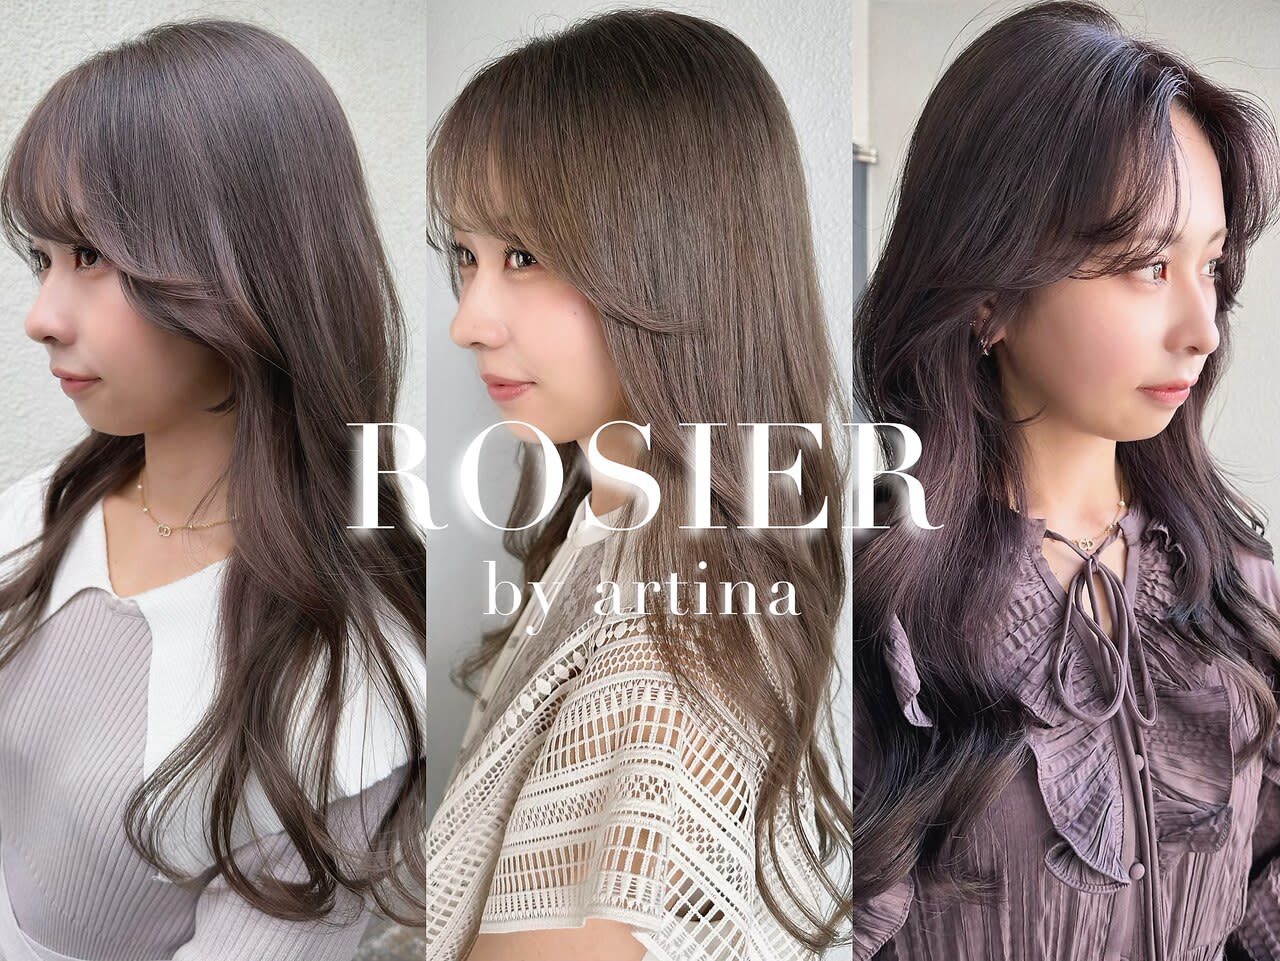 Rosier by artina 町田3号店のアイキャッチ画像